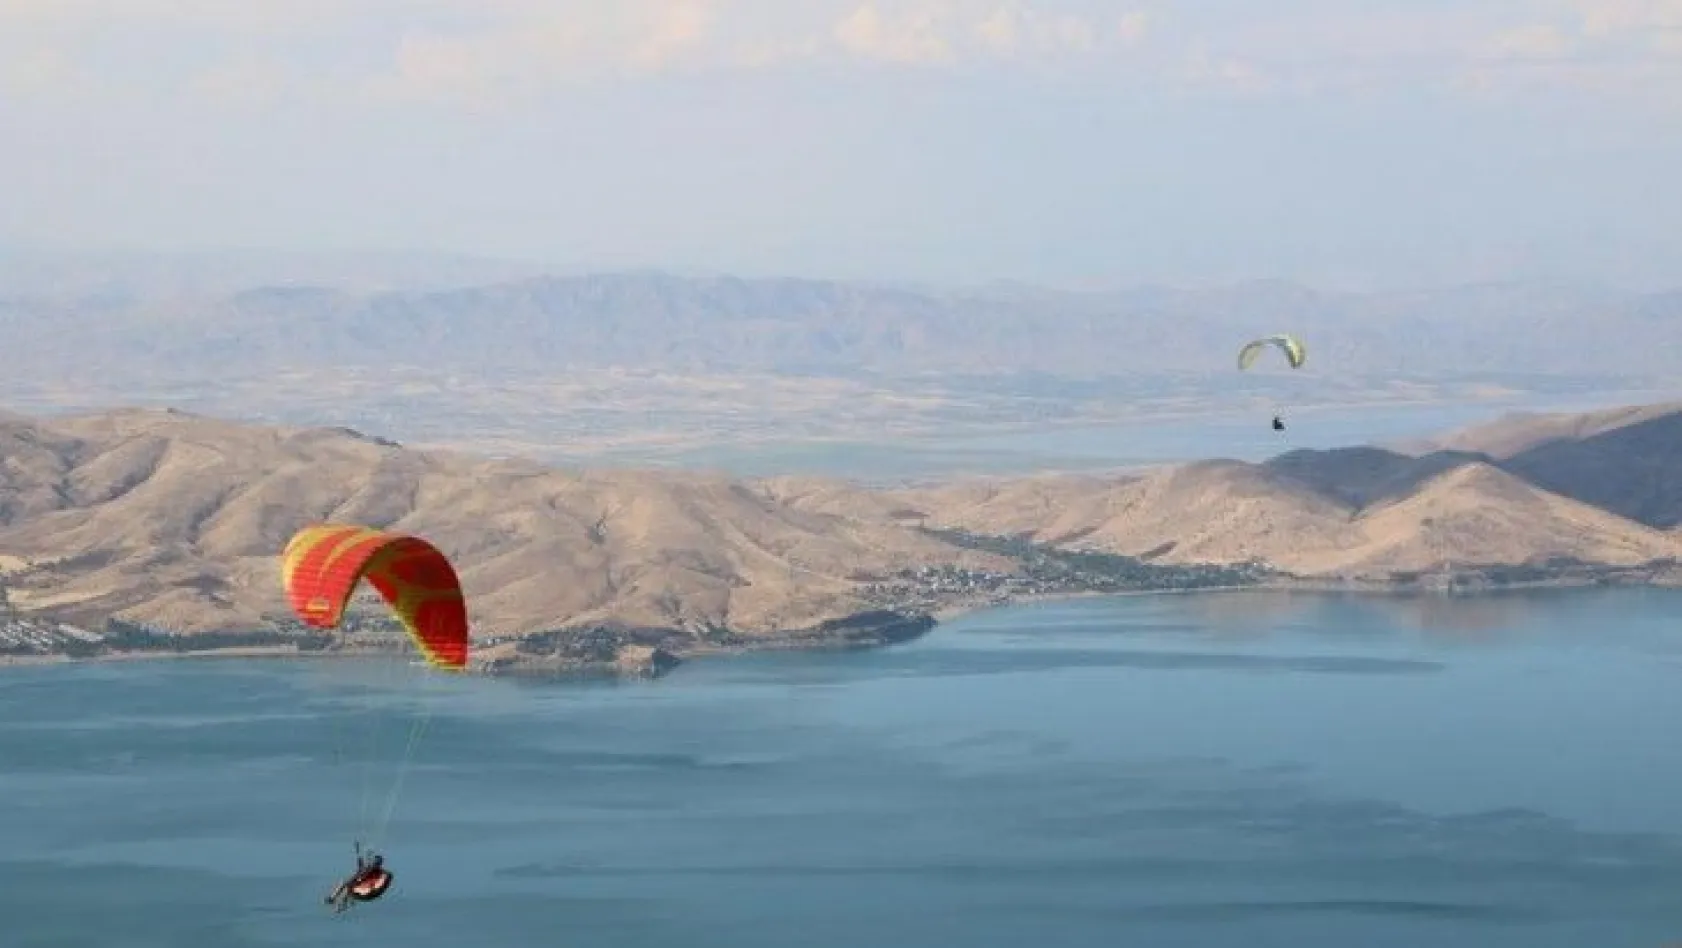 Yamaç paraşütçülerinin gözde mekanı Hazarbaba Dağı